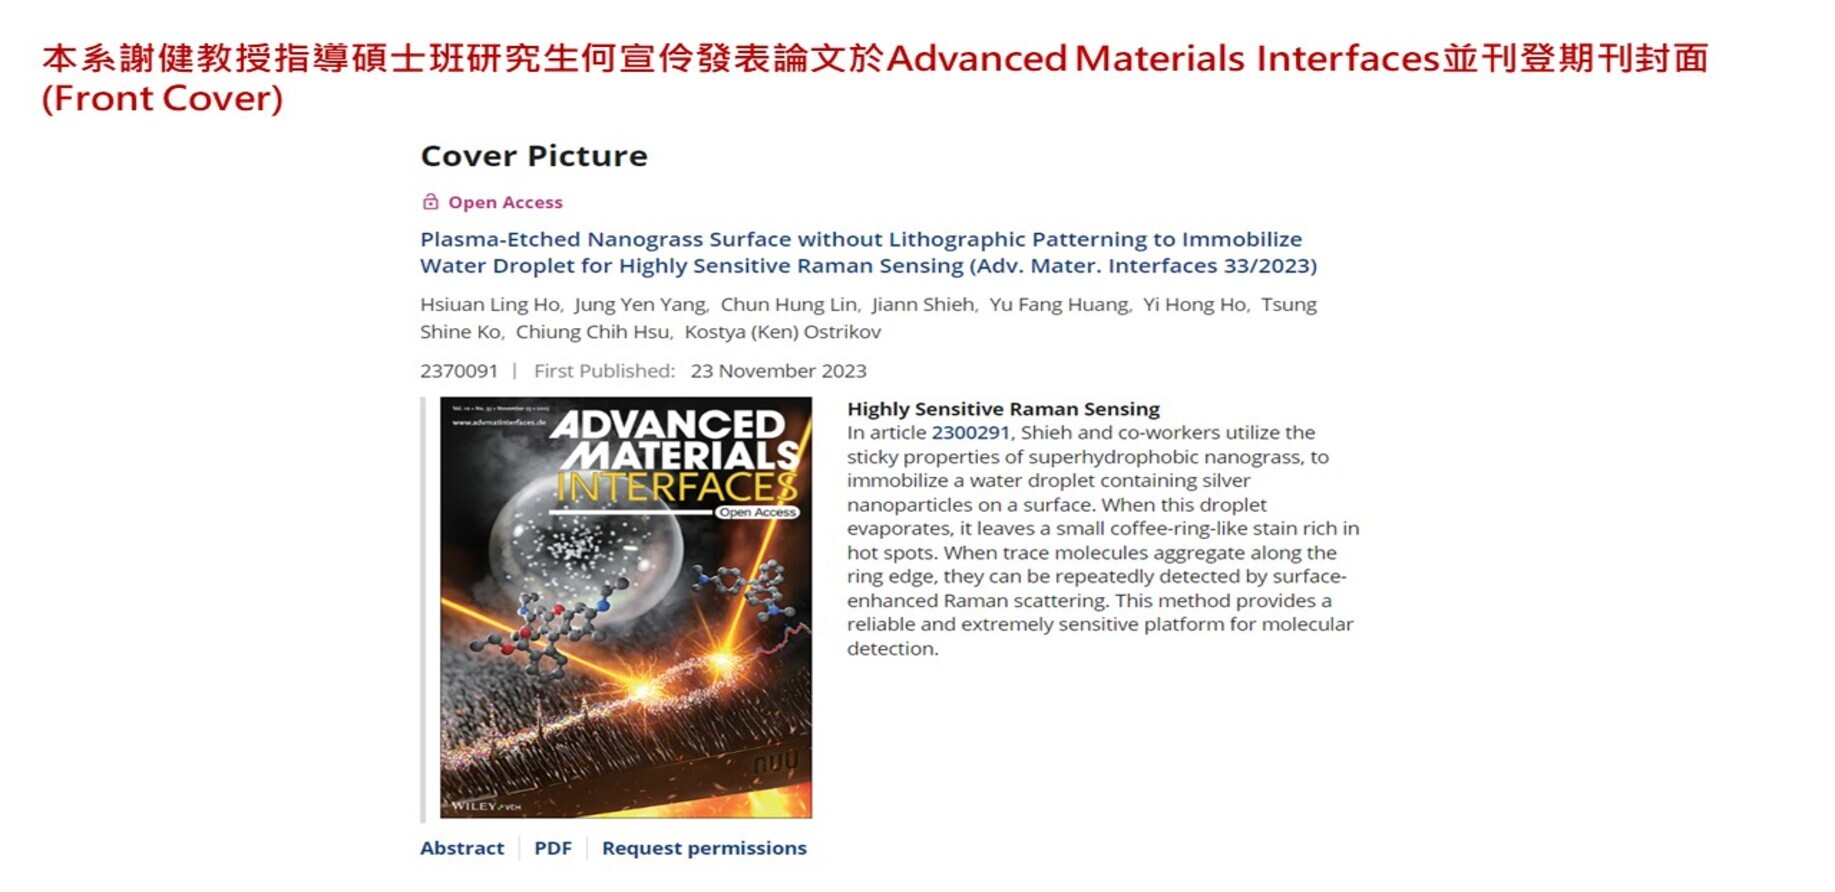 本系謝健教授指導碩士班研究生何宣伶發表論文於Advanced Materials Interfaces並刊登期刊封面(Front Cover)